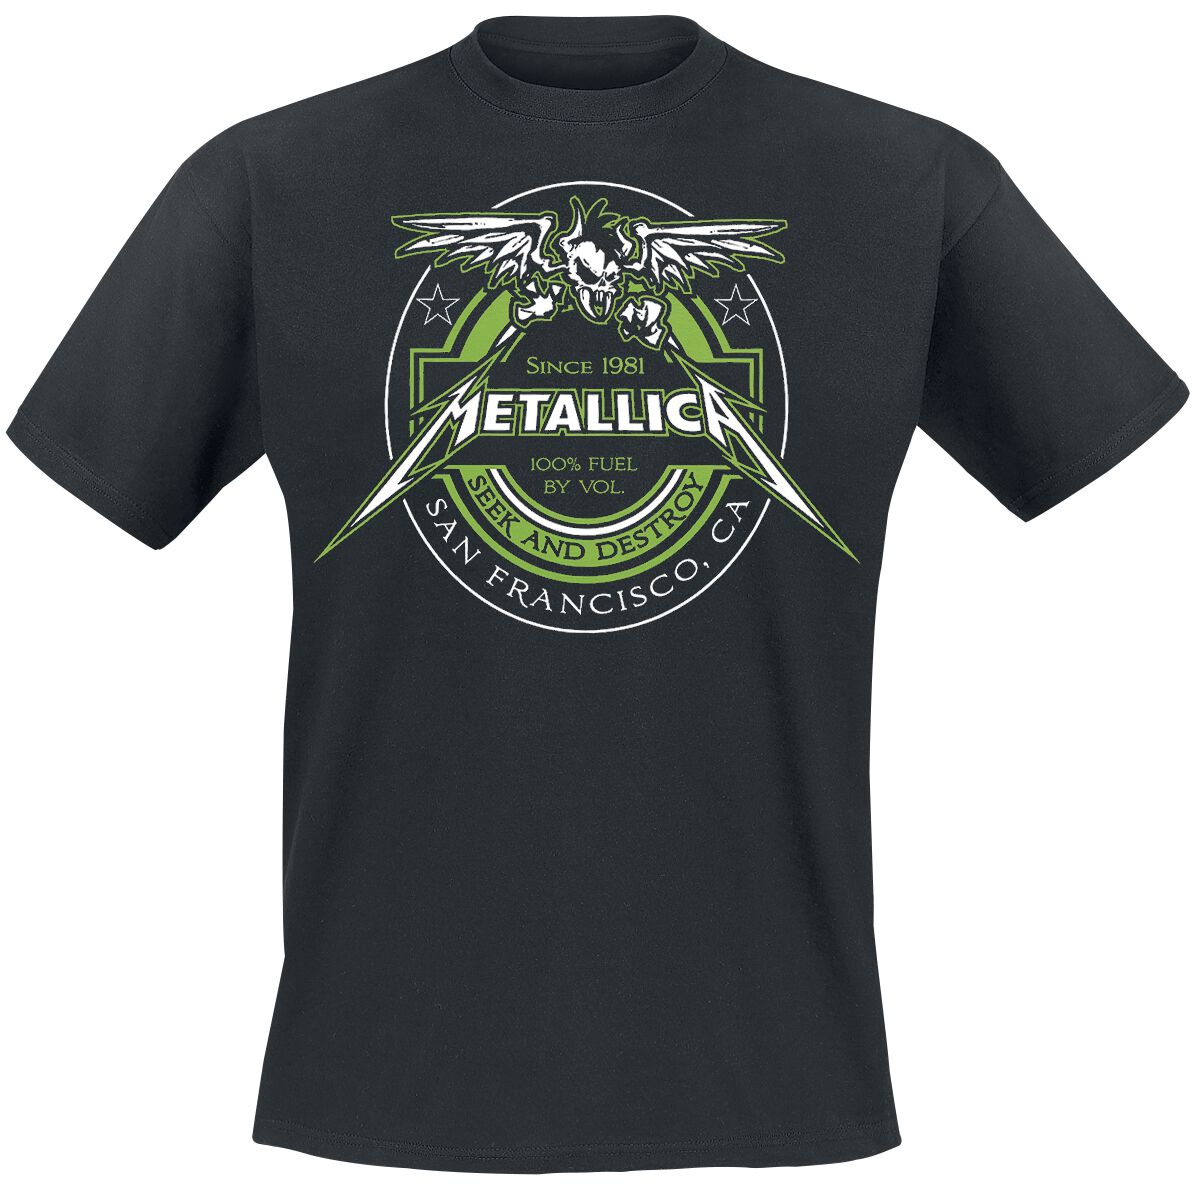 Metallica T-Shirt - 100% Fuel - Seek And Destroy - M bis 4XL - für Männer - Größe 3XL - schwarz  - Lizenziertes Merchandise!